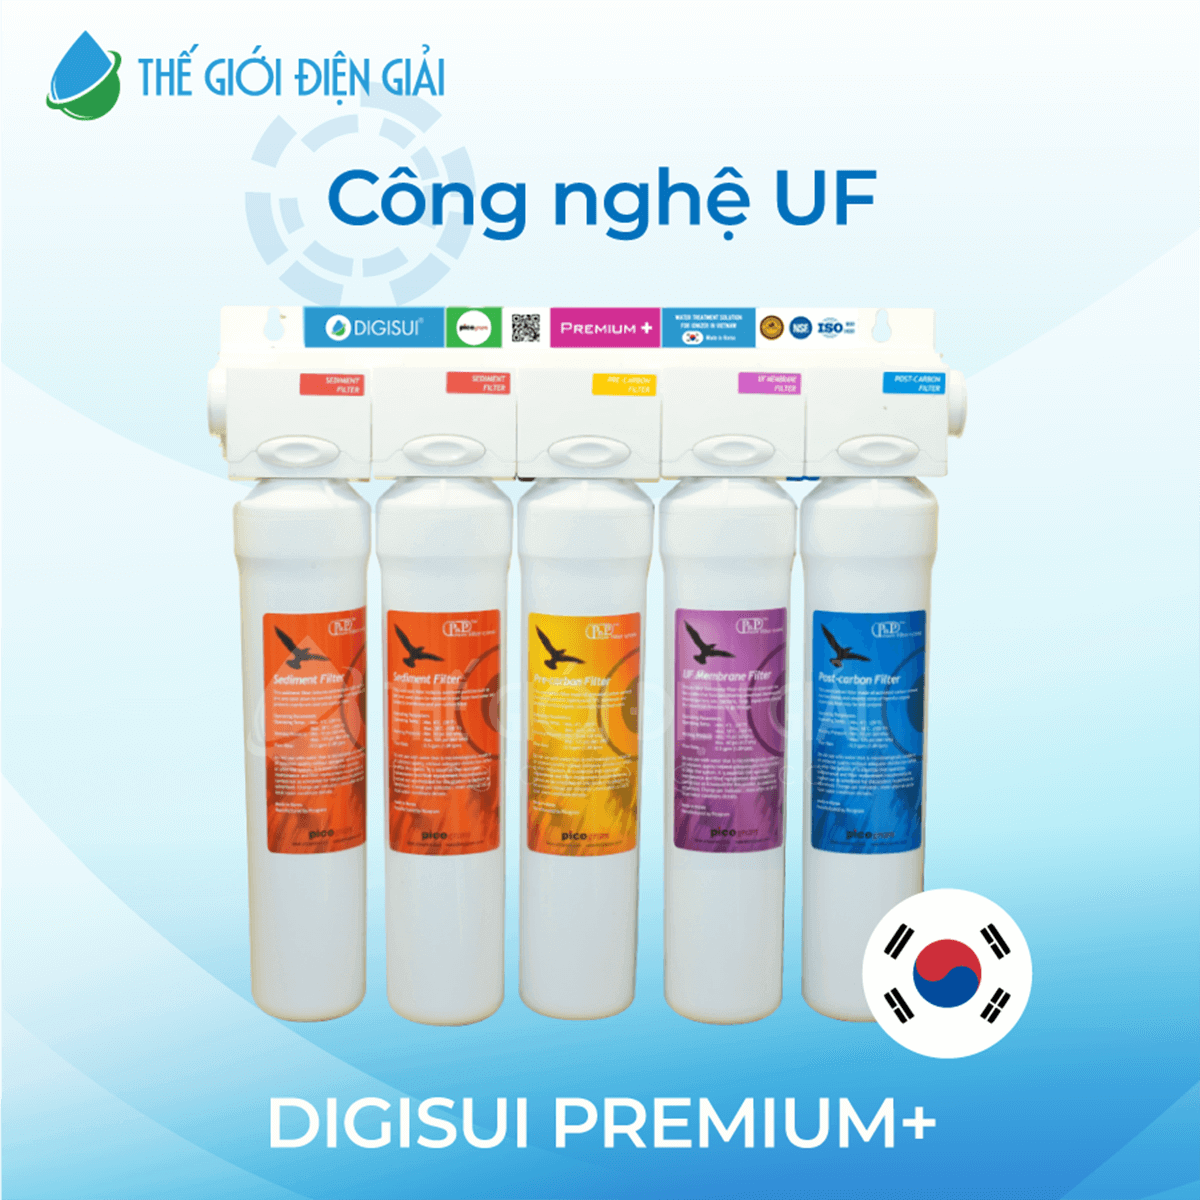 Máy lọc nước DigiSui Premium chính hãng nhập khẩu Hàn Quốc